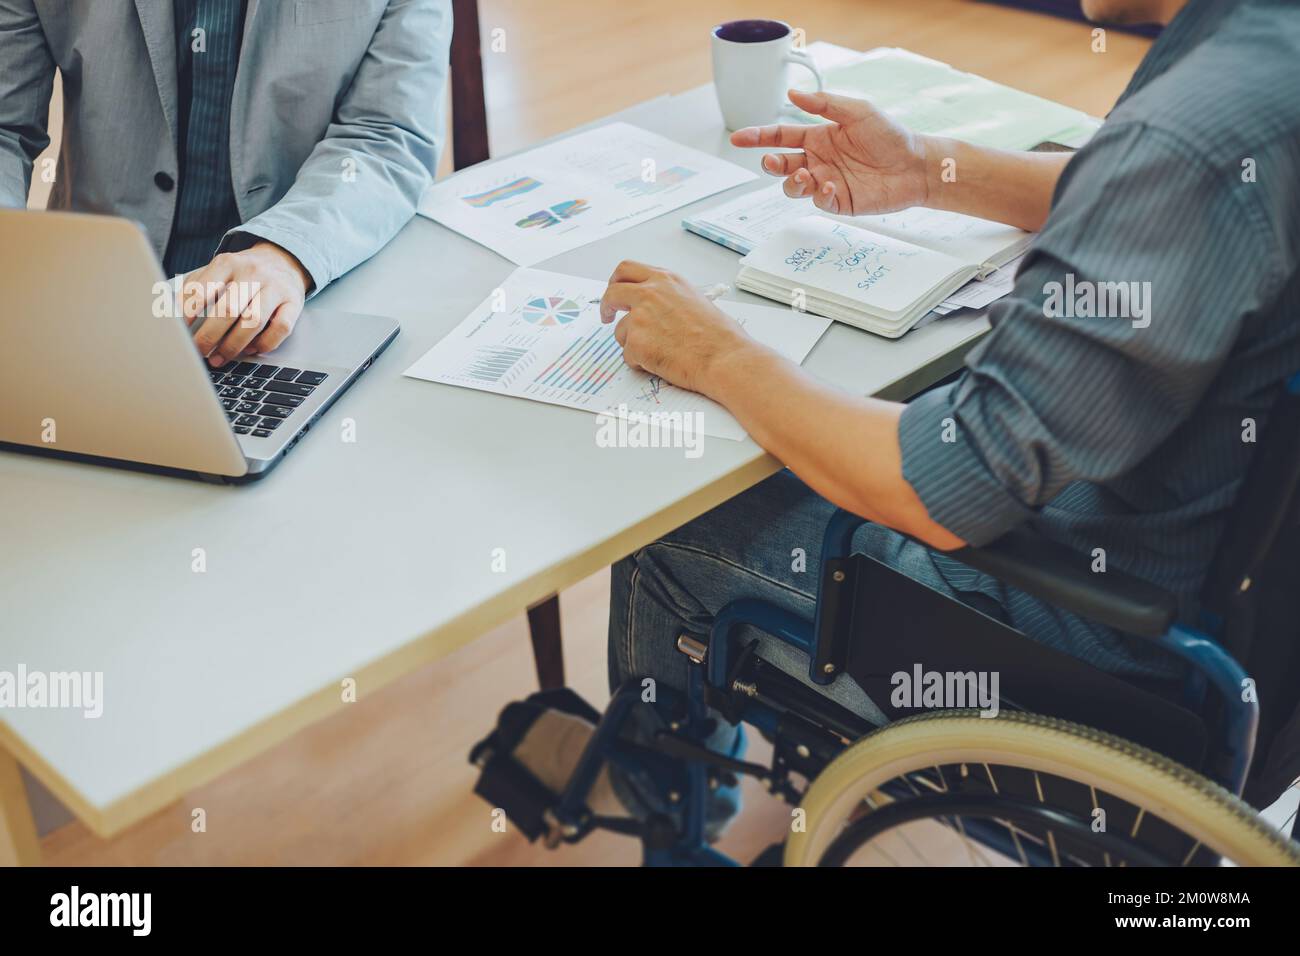 Dopo l'incidente e la riabilitazione, l'uomo disabile può tornare al lavoro. Assunzione di posti di lavoro che impiegano il concetto di persone disabili. Foto Stock